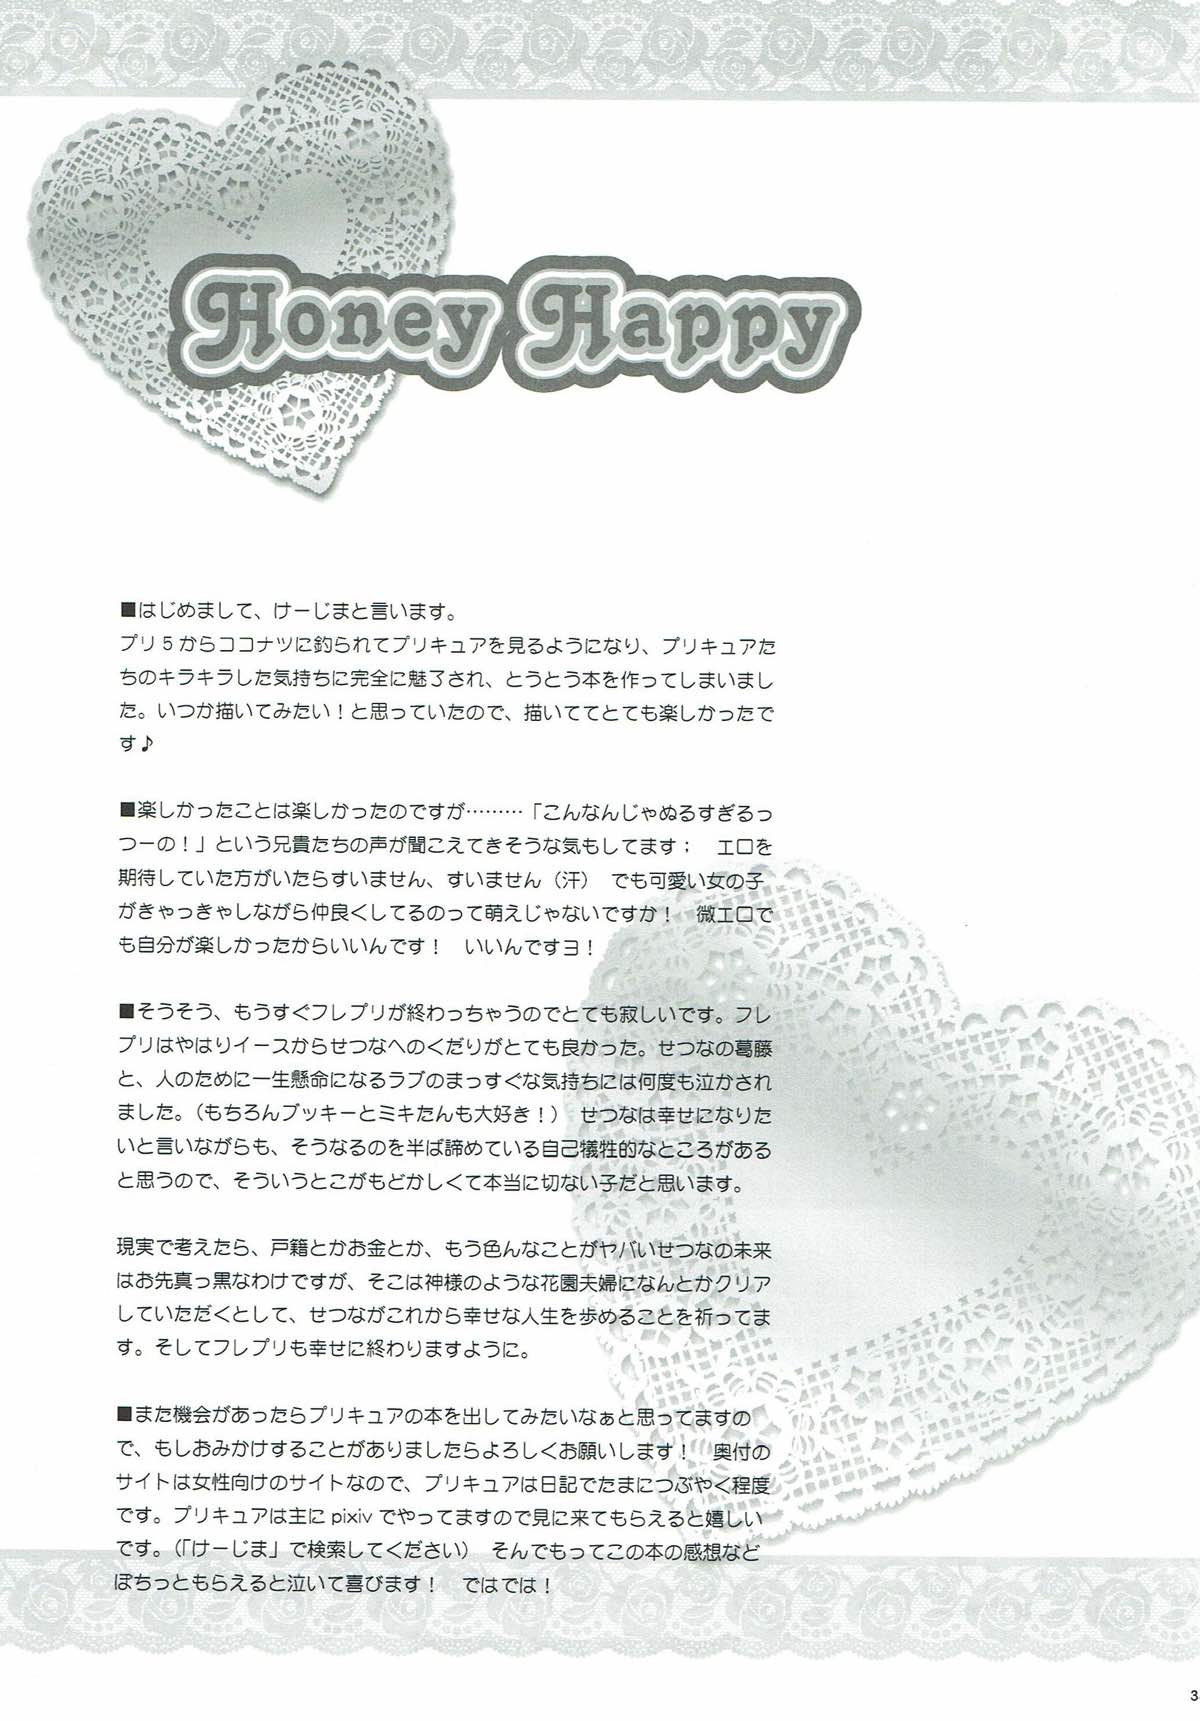 [チェリームーン (圭島瞬里)] Honey Happy (フレッシュプリキュア!) [2011年8月28日]